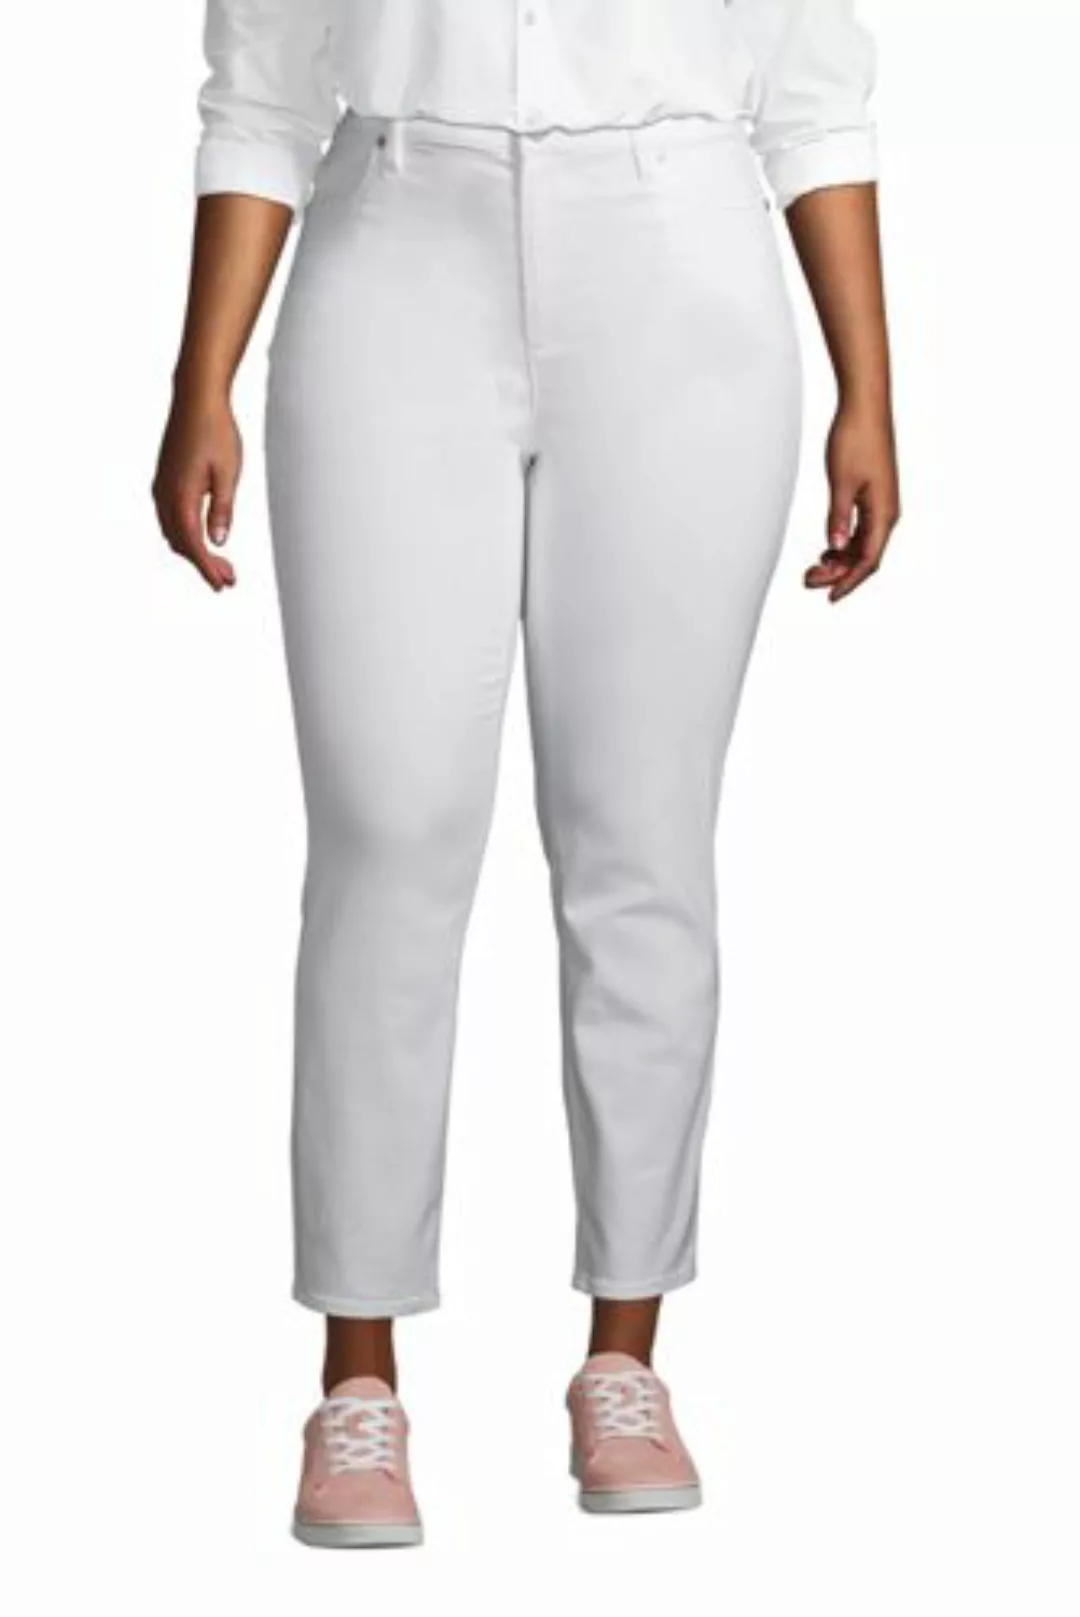 Slim Fit Öko Jeans High Waist in großen Größen, Damen, Größe: XL Plusgrößen günstig online kaufen